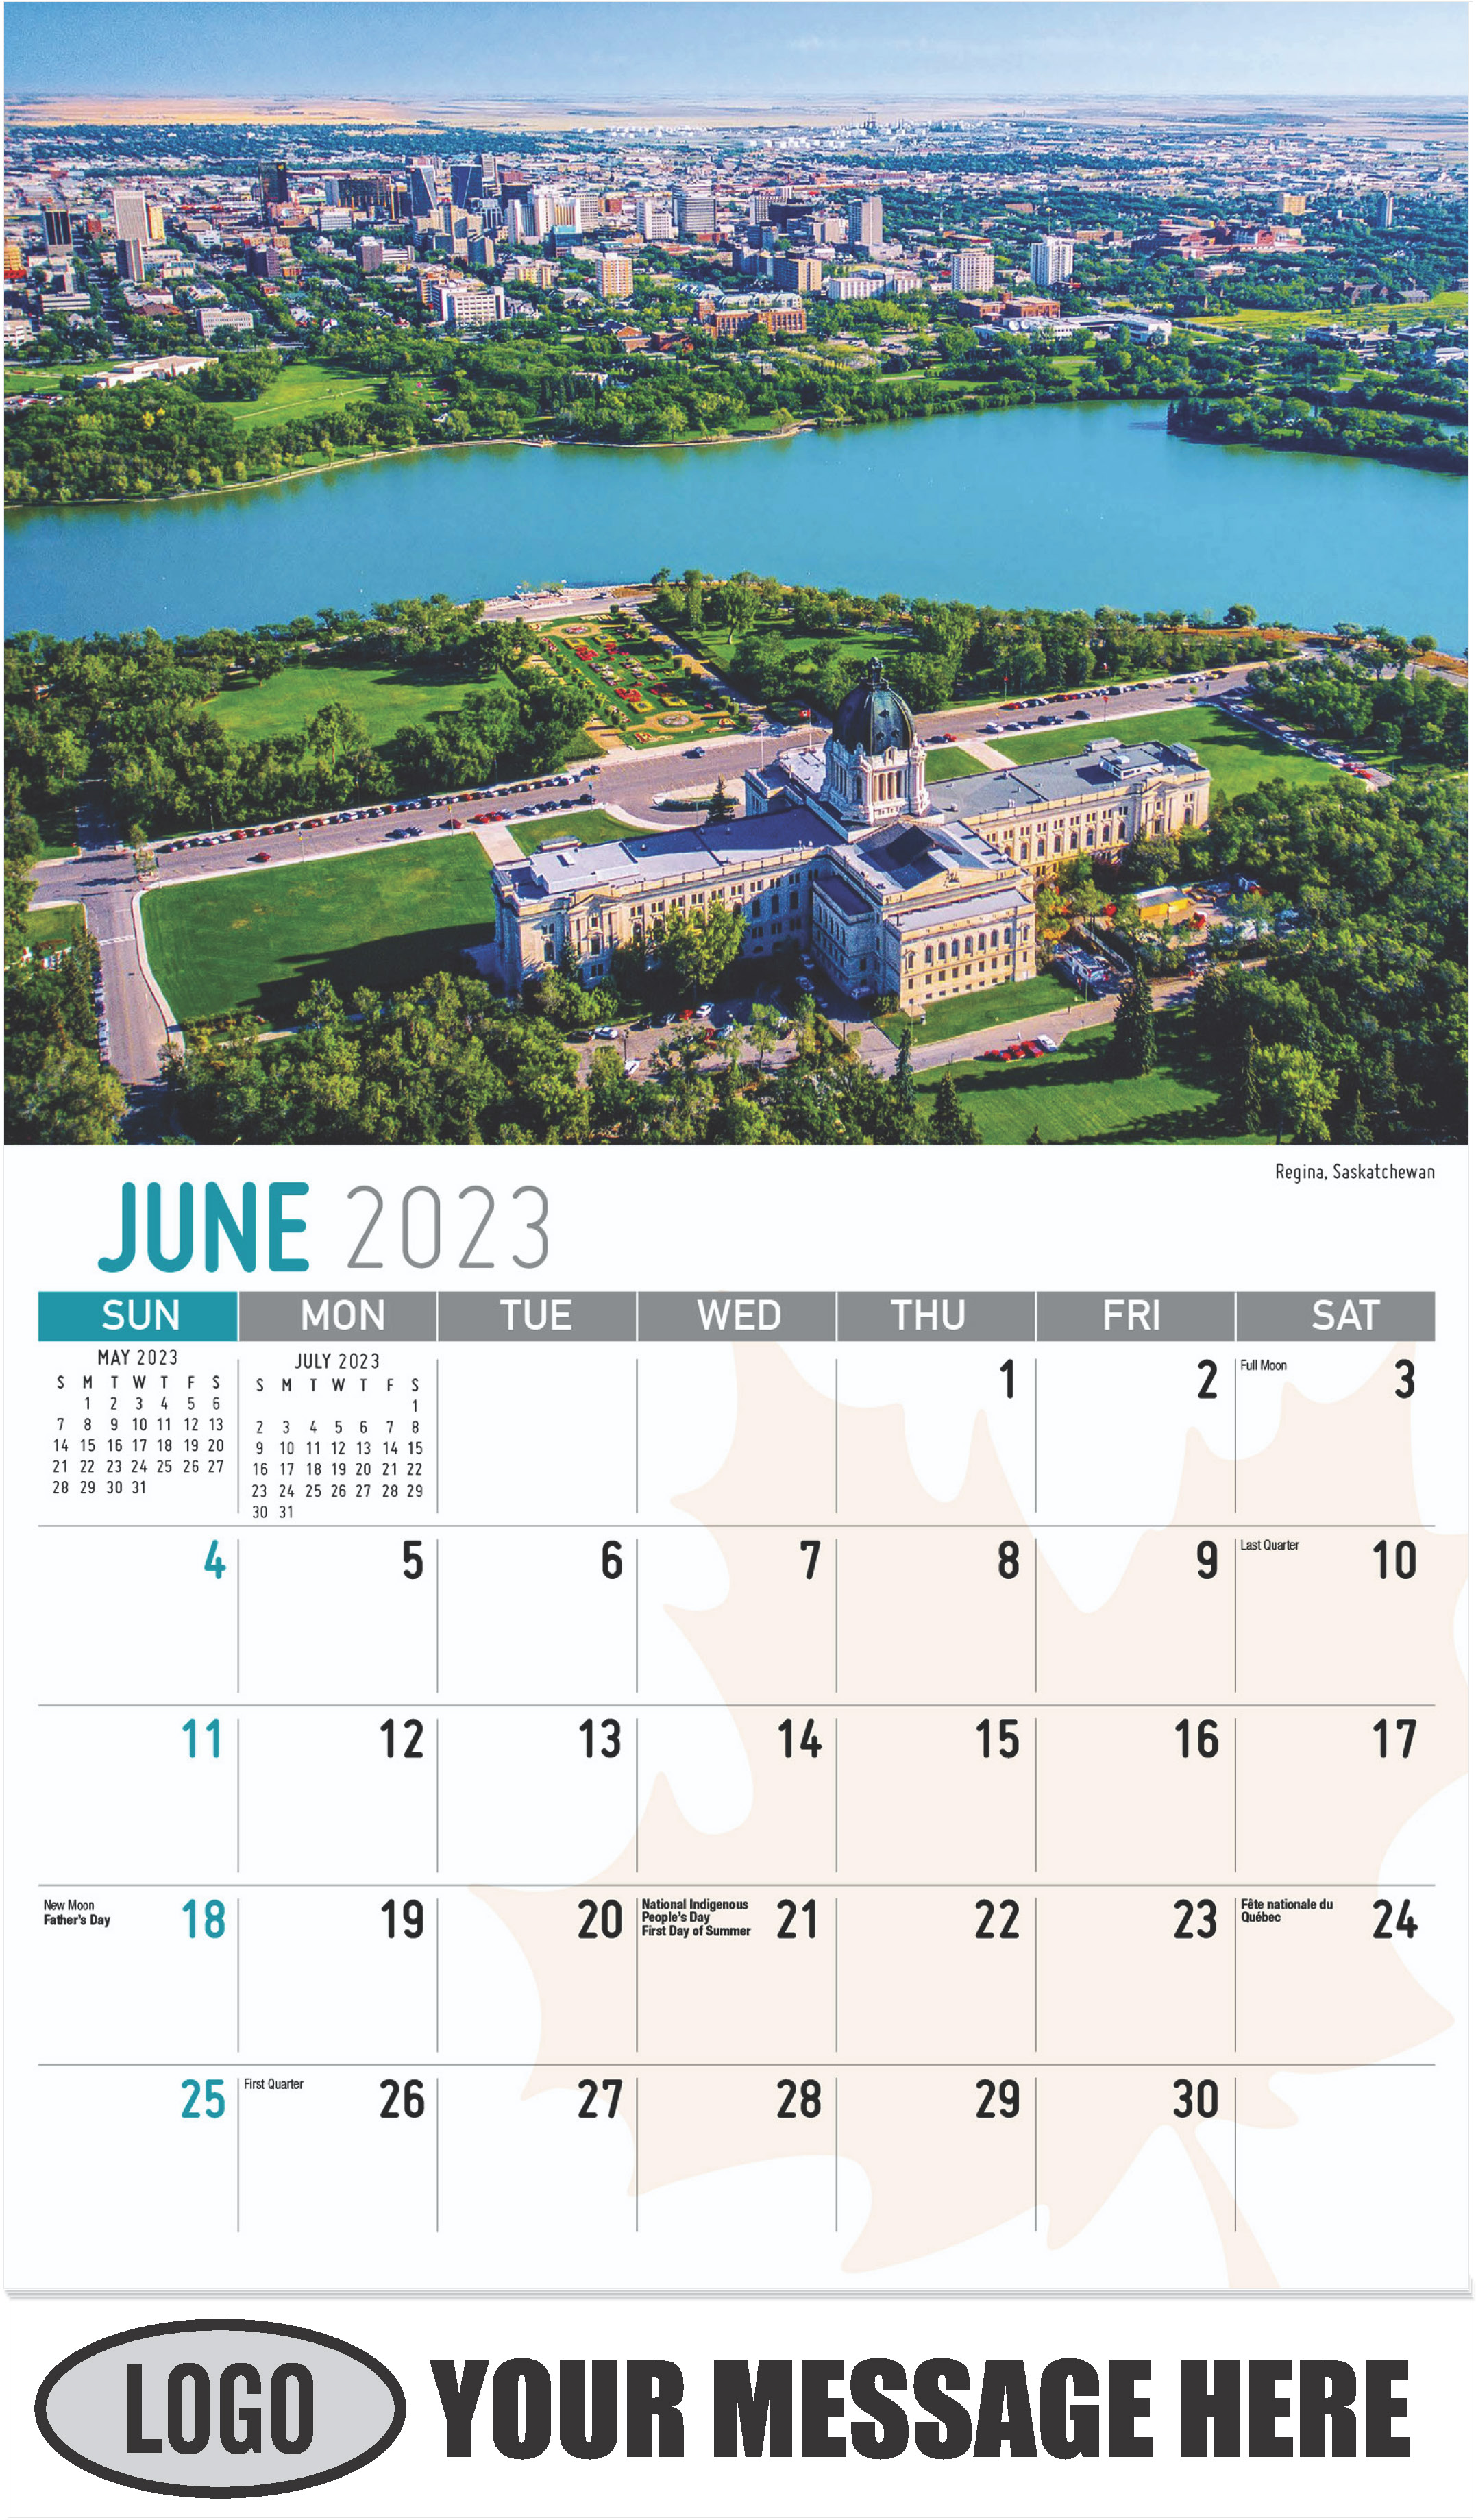 Regina, Saskatchewan - June - Scenes of Canada 2023 Promotional Calendar